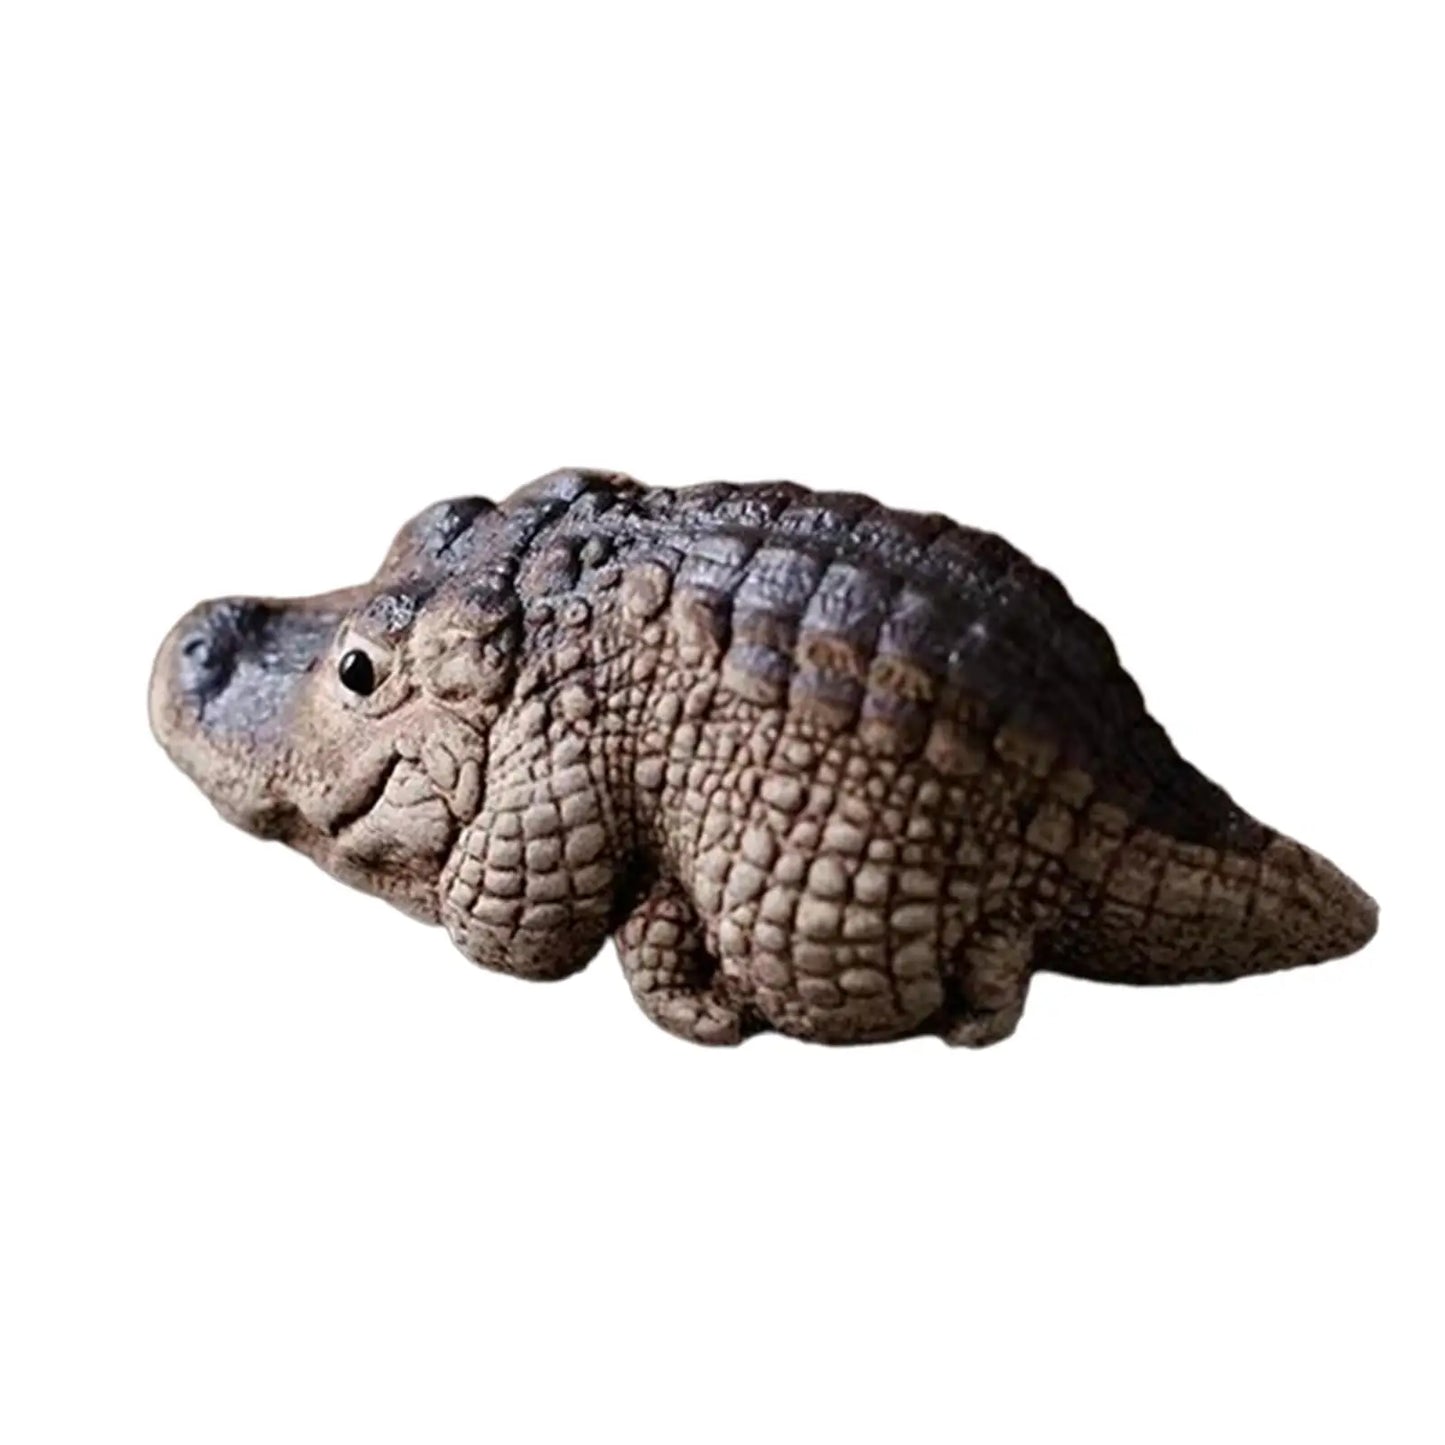 1x Clay Alligator Crocodile Mini Tea Pet Figurine Decoration Miniature Figurine